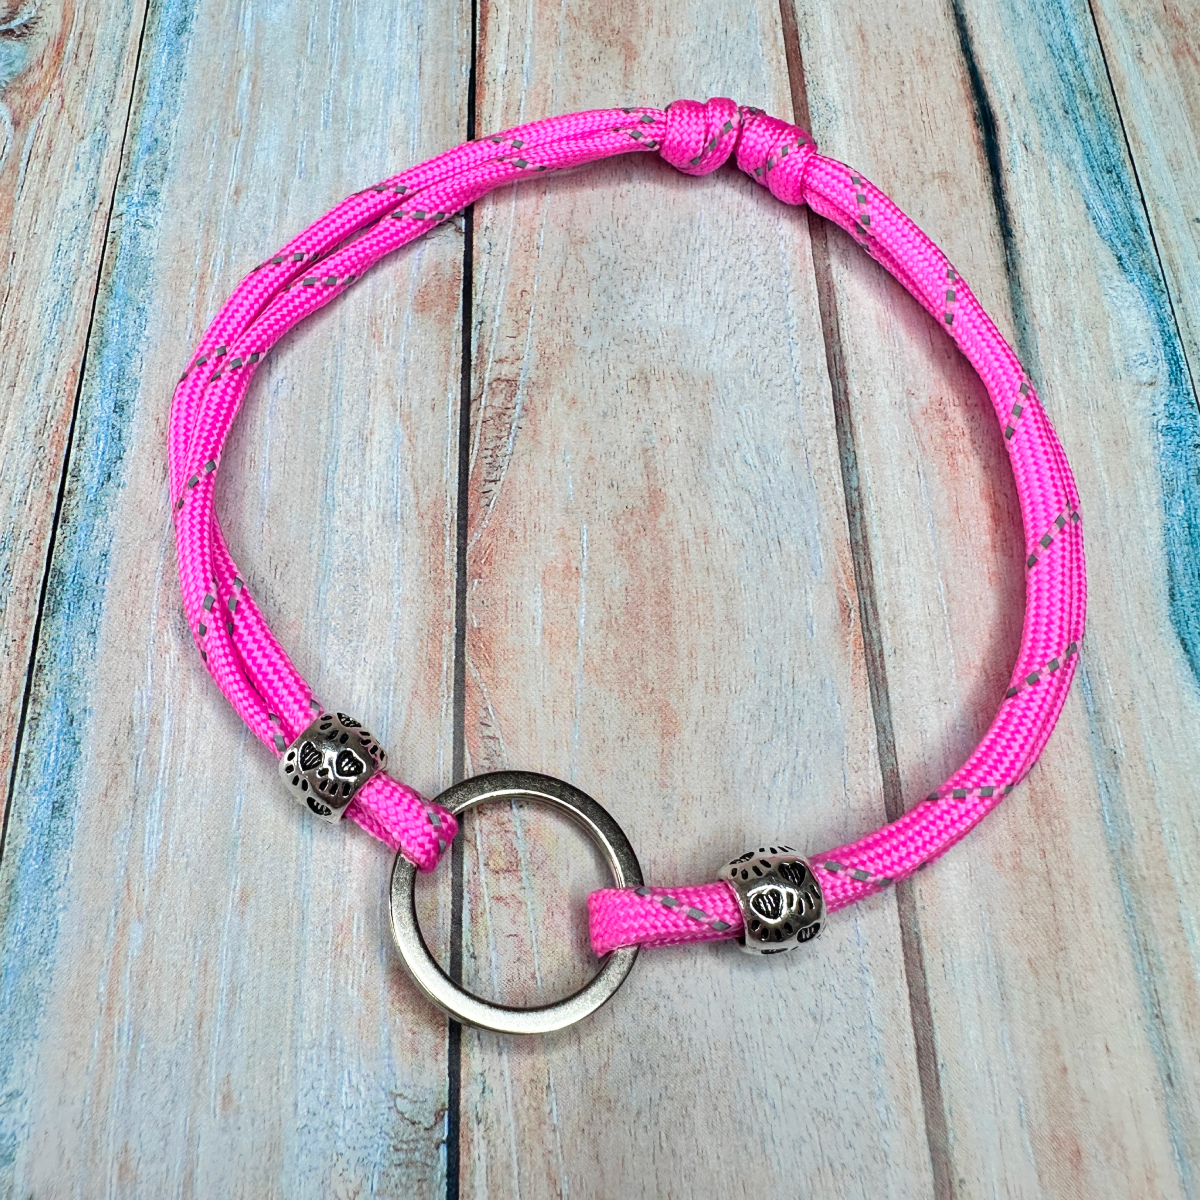 Ошейник-шнурок для адресника светоотражающий из паракорда размер S 28-40 см, цвет розовый